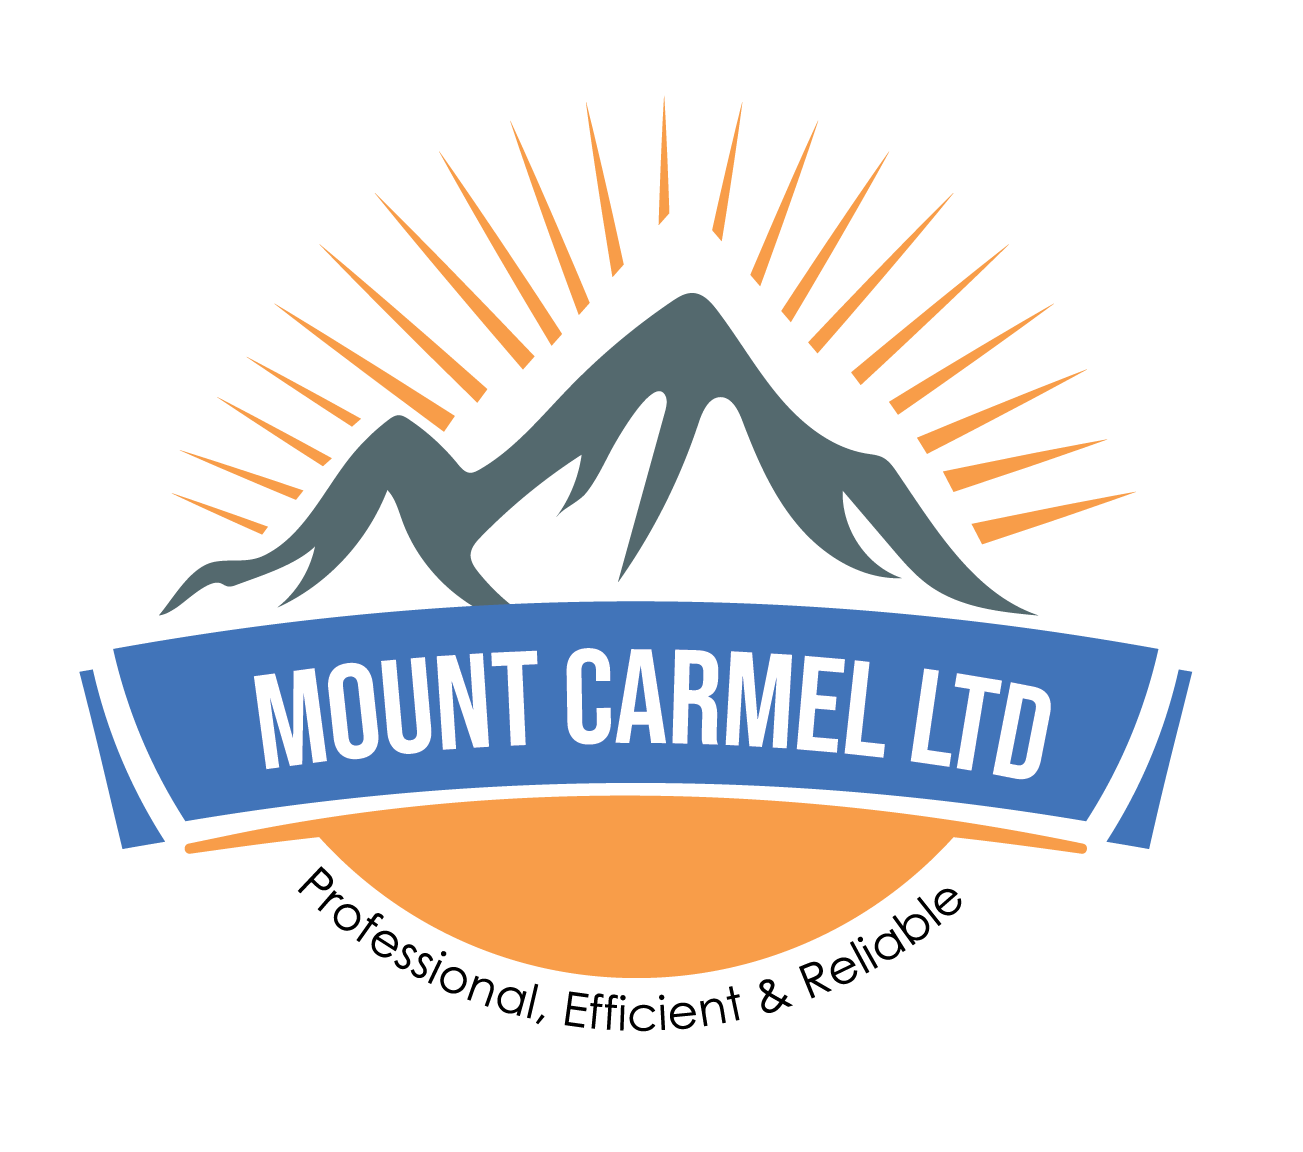 Mount Carmel LTD